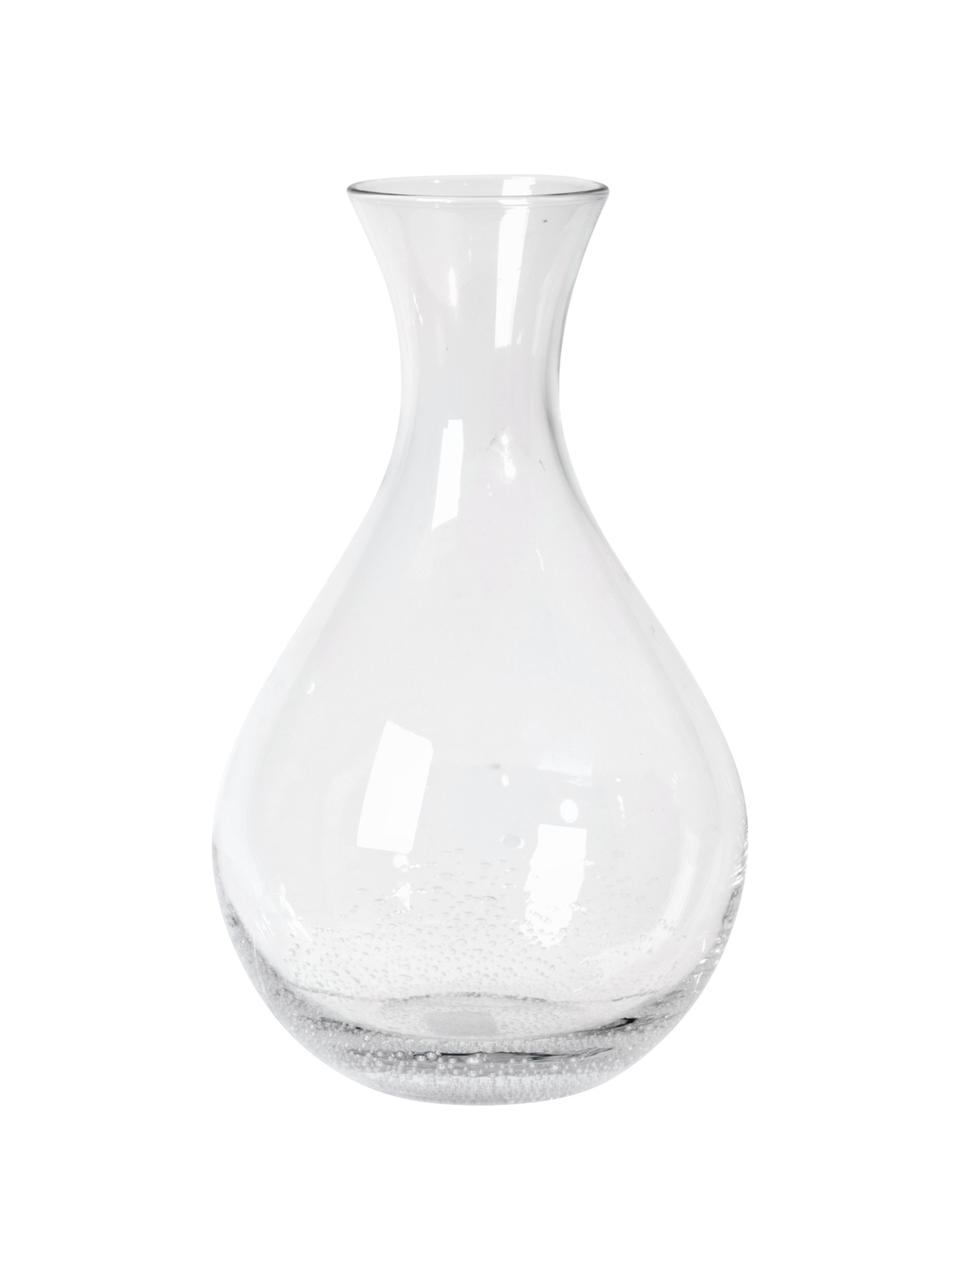 Caraffa in vetro soffiato con bollicine Bubble, 800 ml, Vetro soffiato, Trasparente con bolle d'aria, Alt. 26 cm, 800 ml